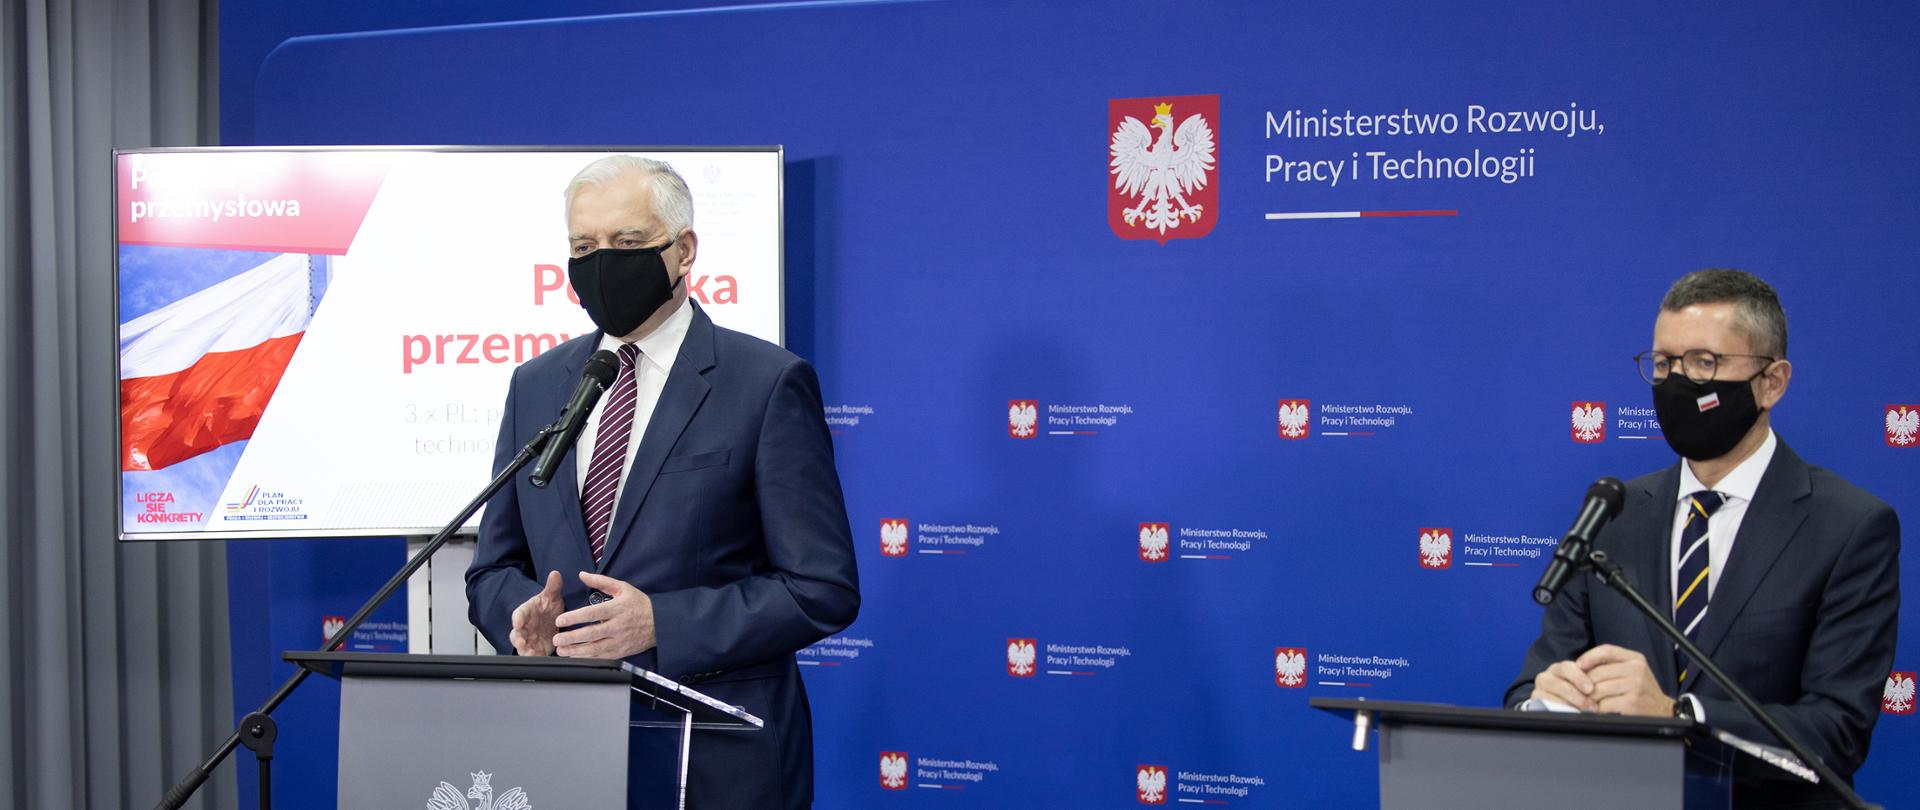 Zdjęcie przedstawia stojących za mównicami wicepremiera Jarosława Gowina oraz wiceministra Roberta Tomanka podczas konferencji prasowej w MRPiT nt. Polityki Przemysłowej Polski